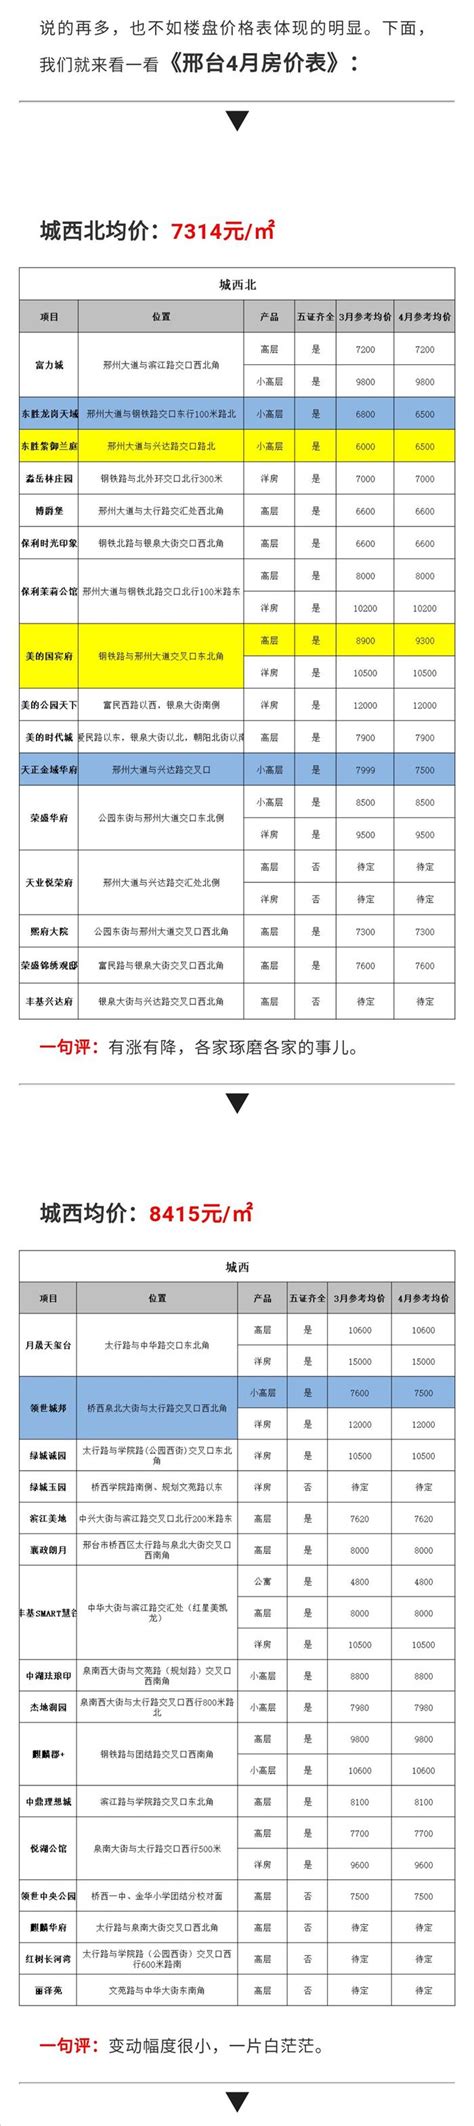 邢台123：2021年8月，邢台市15个区最新房价出炉，环比来看，有14个区下跌，1个区上涨